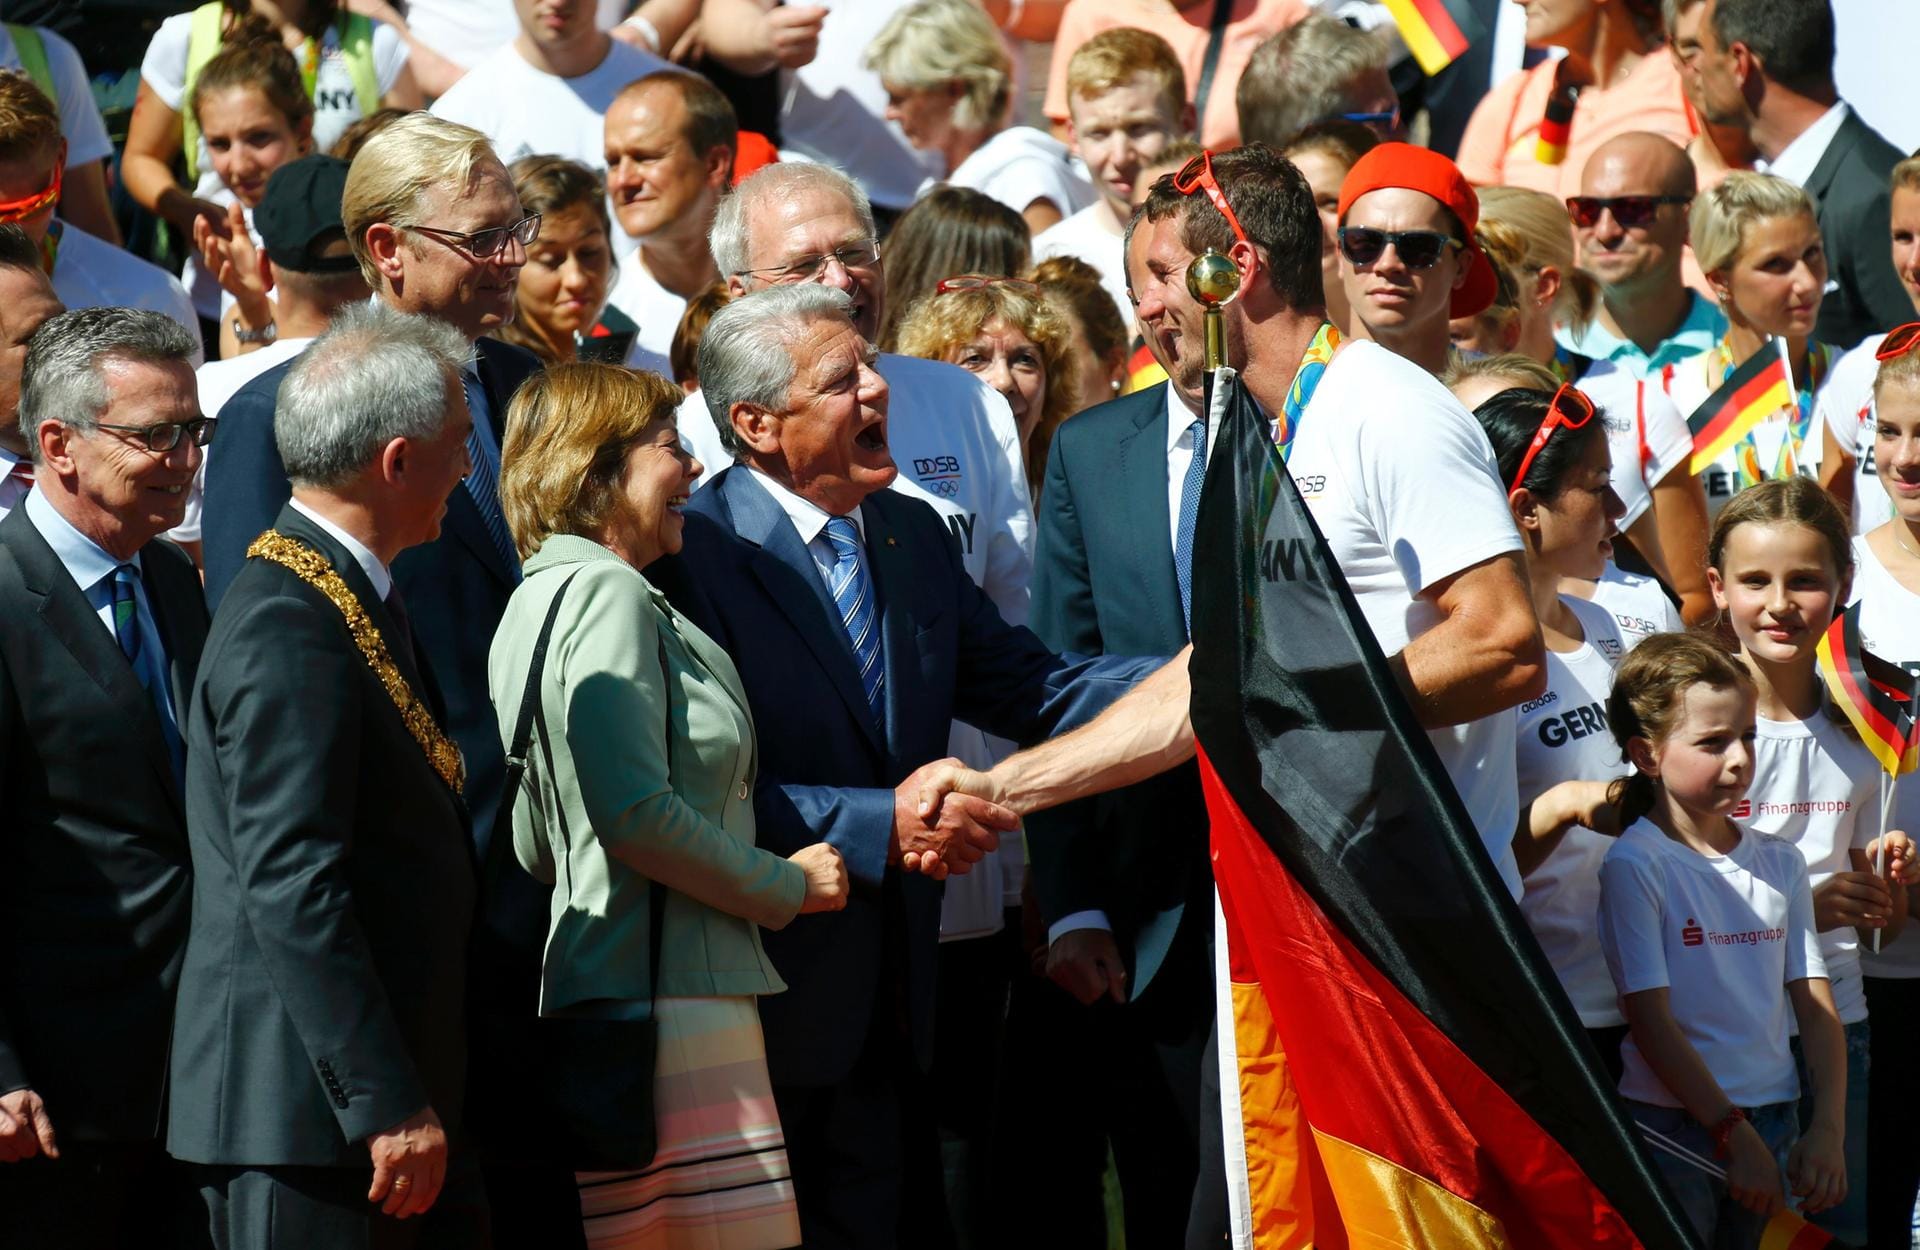 Die Hand drauf: Kurz darauf begrüßte Ruderer Brendel den Bundespräsidenten Joachim Gauck.